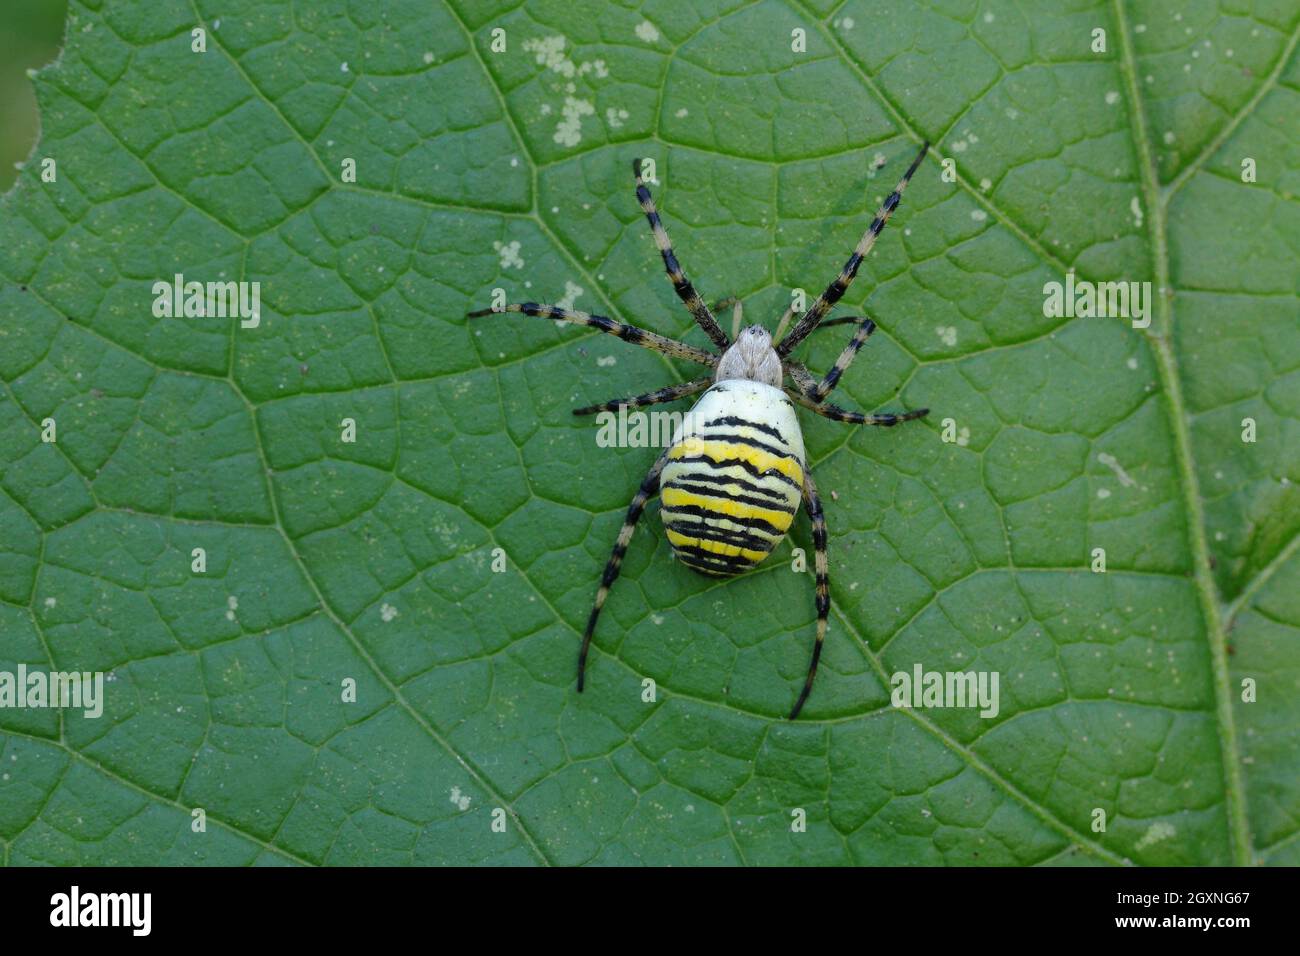 Wasp spider (Argiope bruennichi), on a leaf, North Rhine-Westphalia, Germany Stock Photo